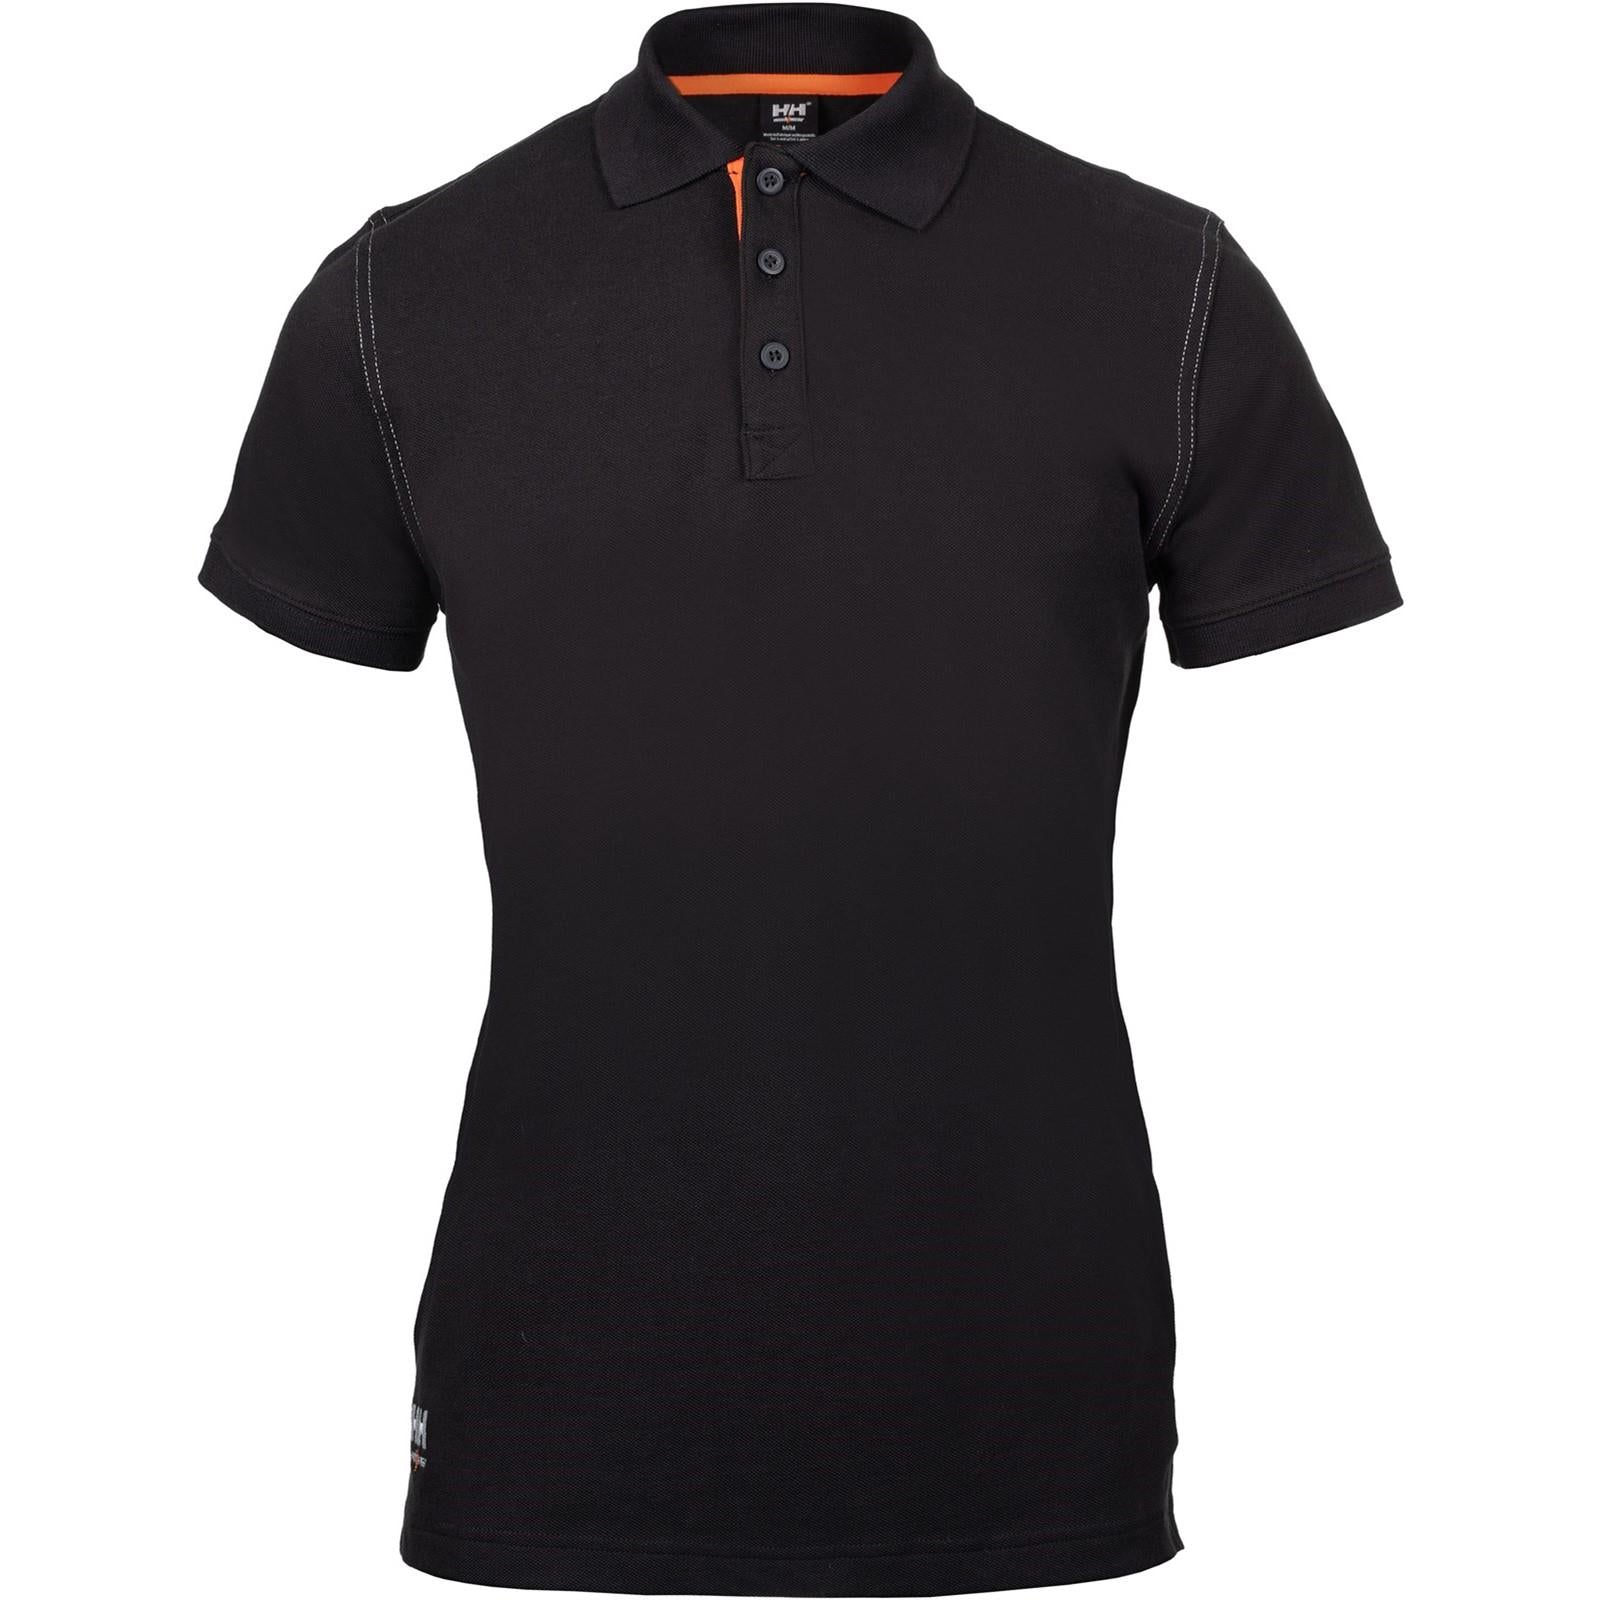 Helly Hansen Oxford black cotton/elastane men's polo-shirt #79241